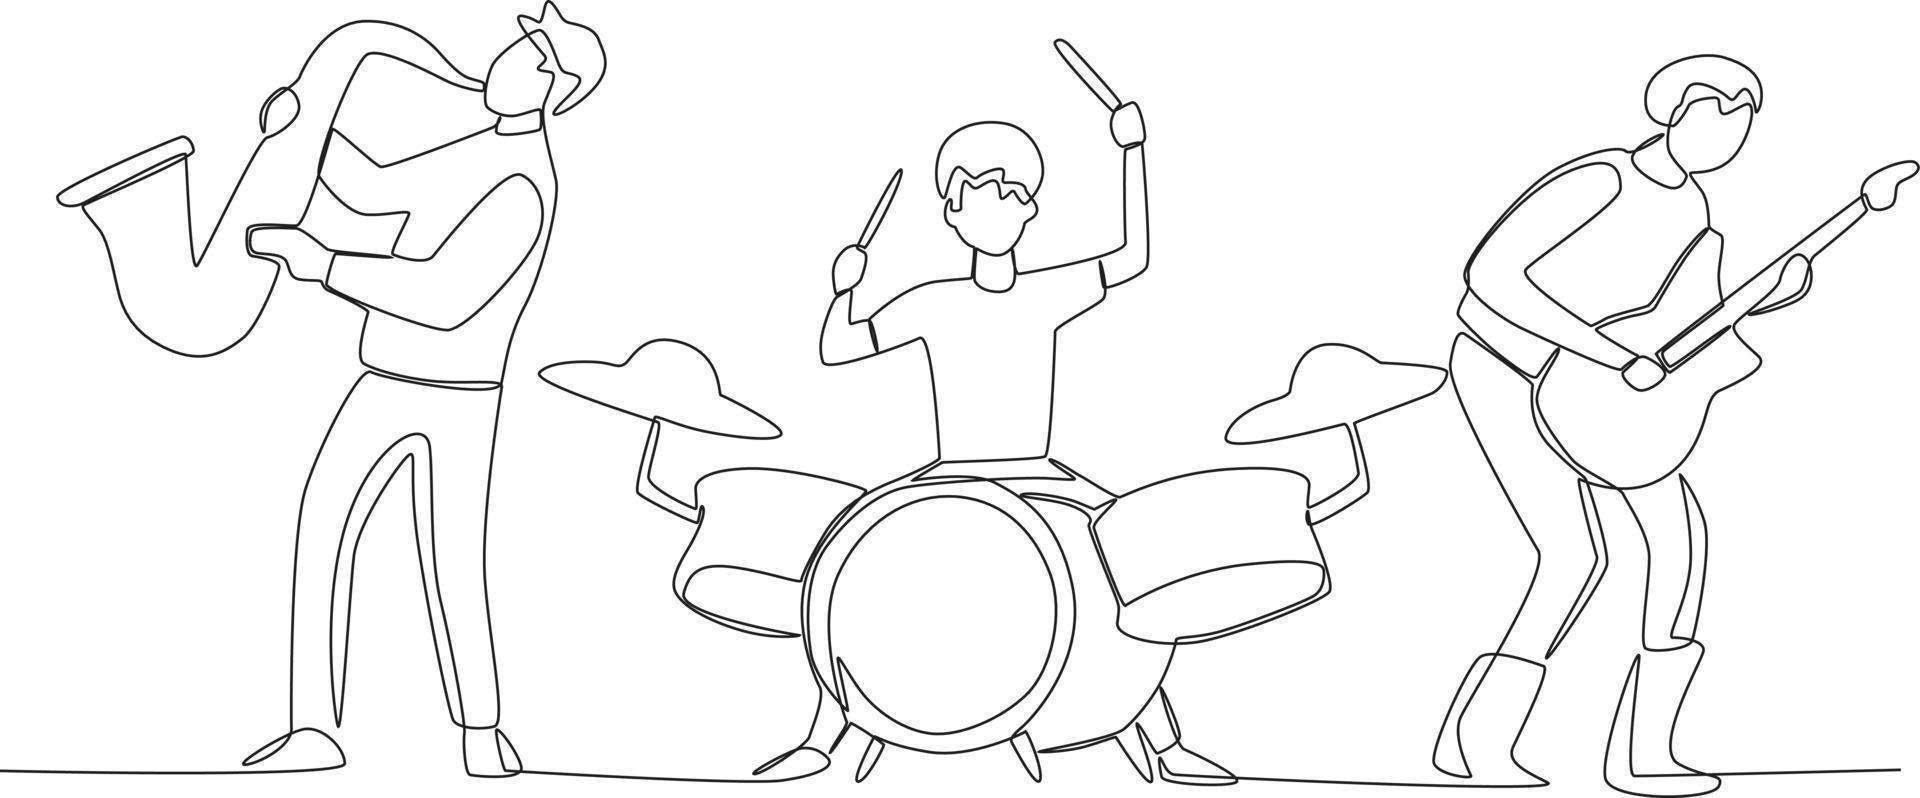 tre musicisti l'esecuzione su il musica gruppo musicale una linea disegno vettore